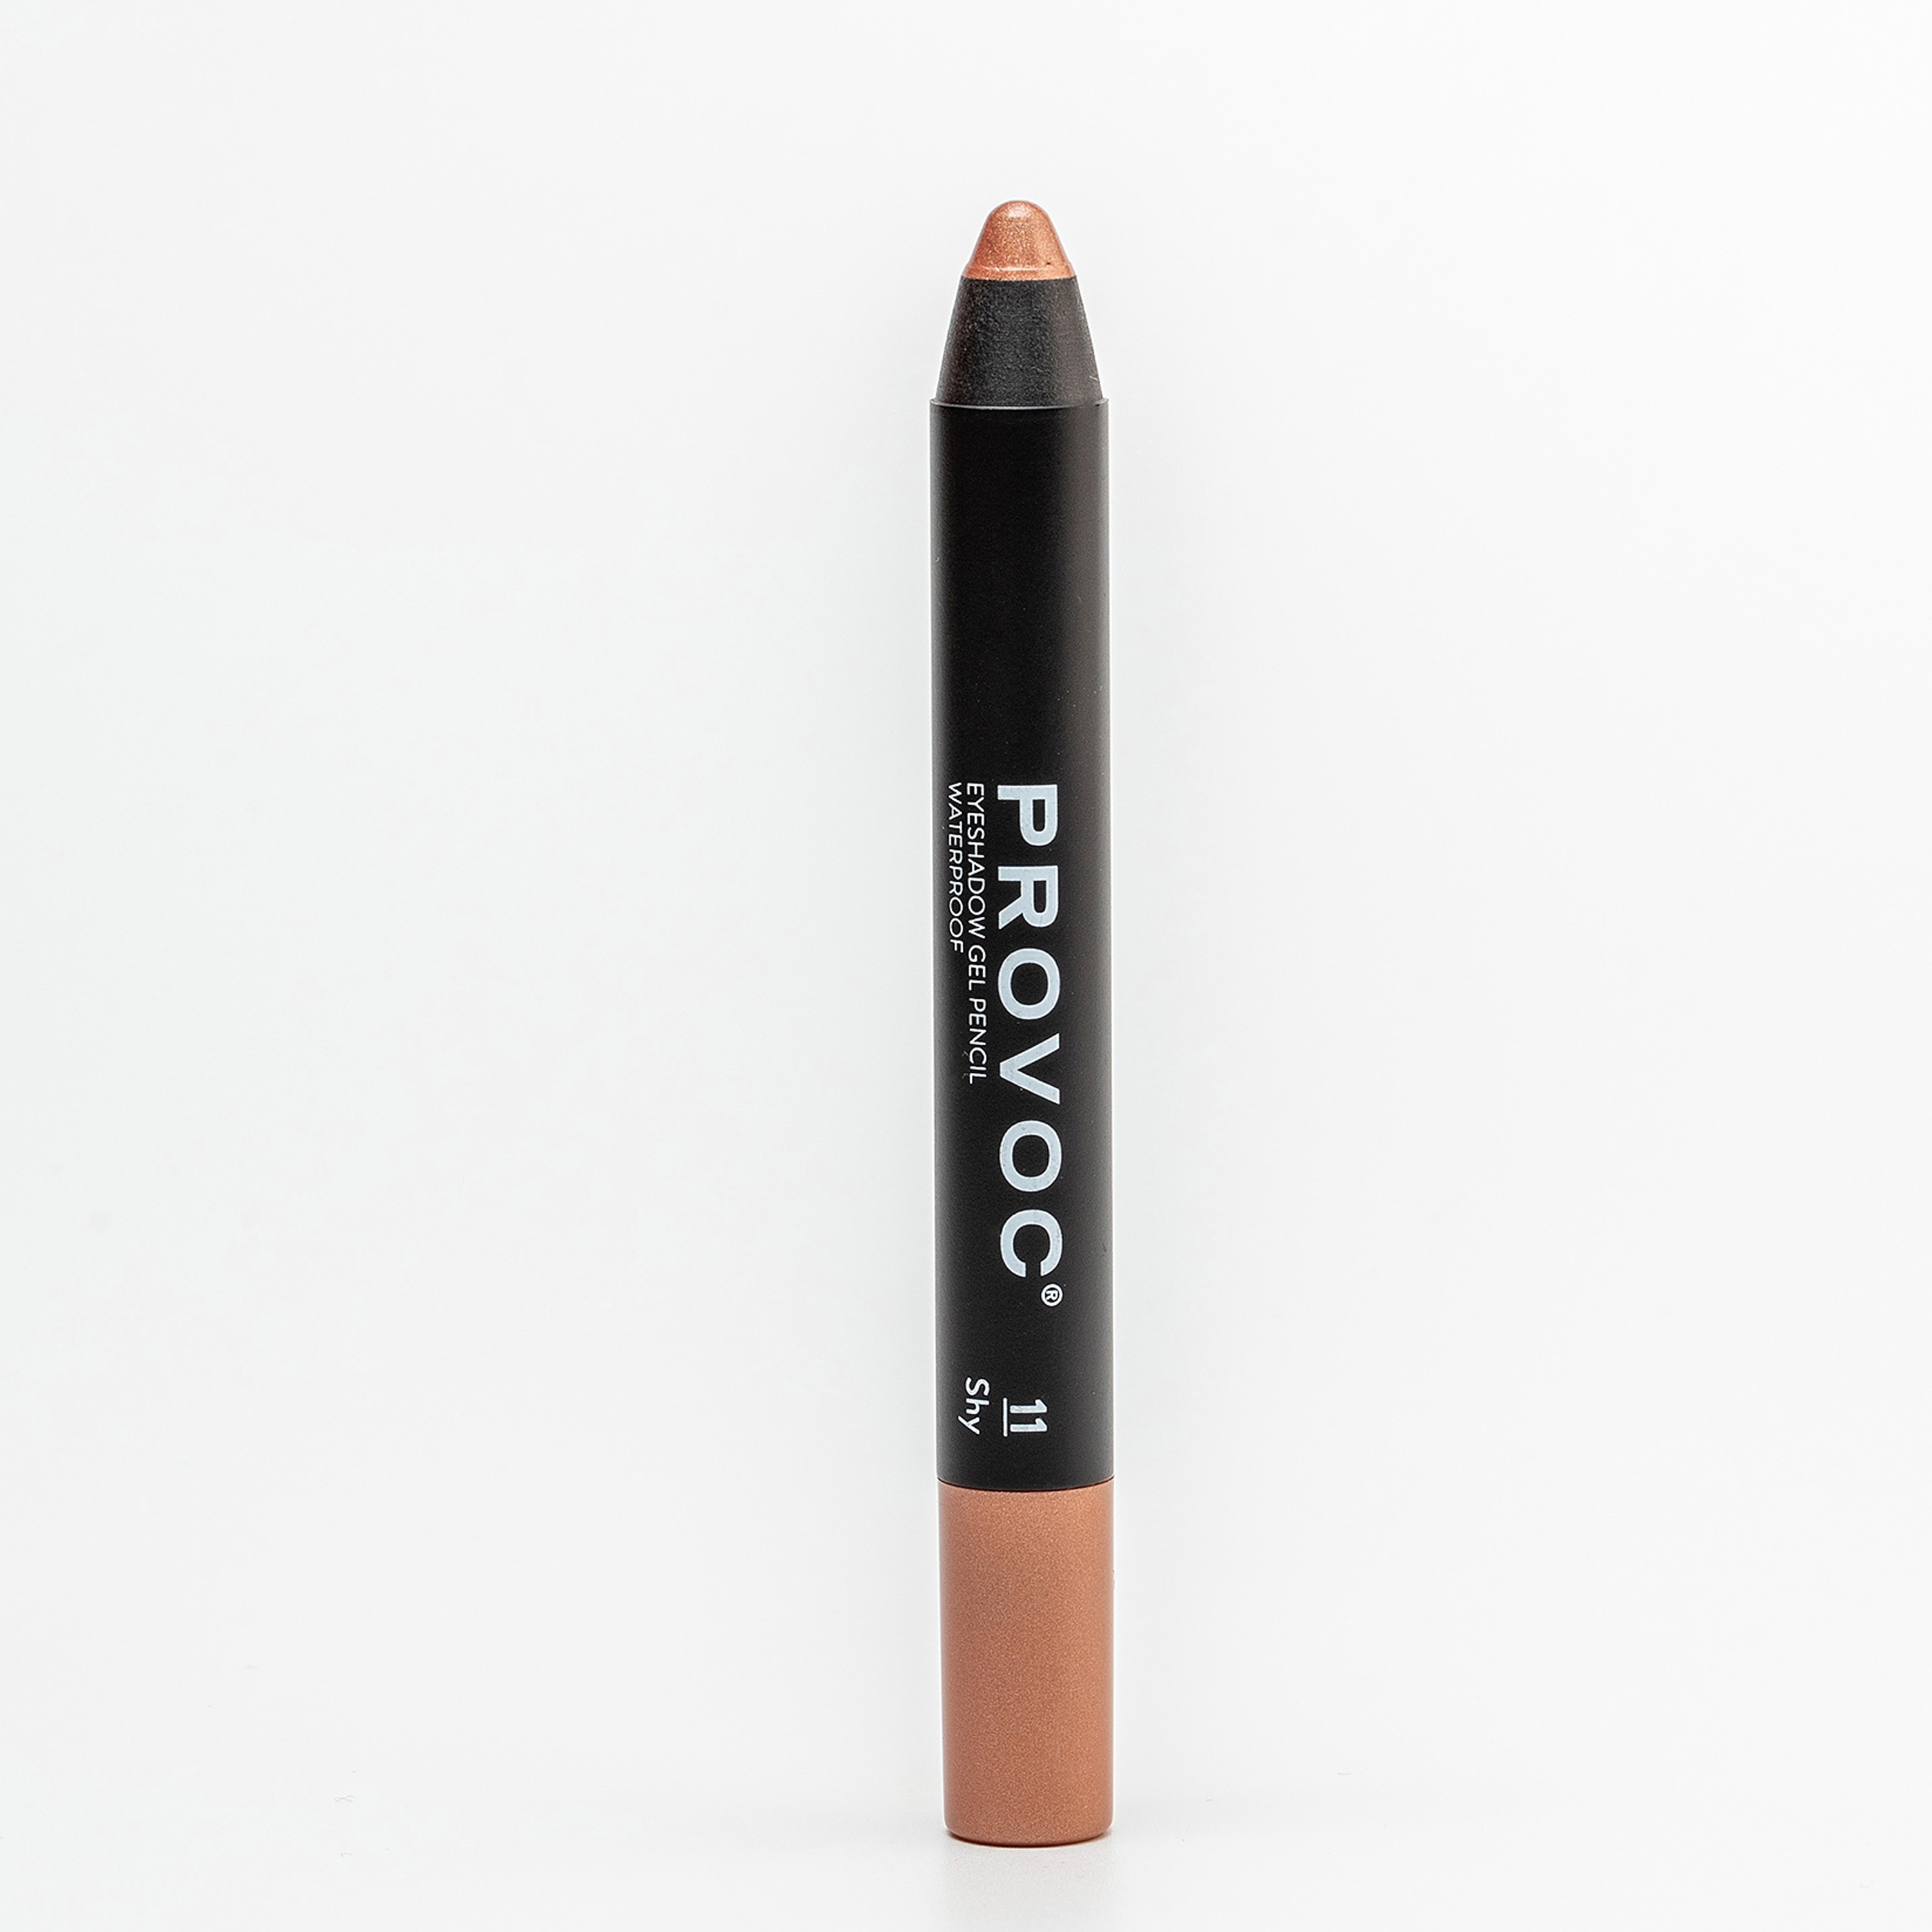 Тени-карандаш PROVOC Eyeshadow Pencil L водостойкие, шиммер 11 персиковый, 2,3 г тени карандаш водостойкие eyeshadow pencil pvep02 2 жемчужный шиммер 1 шт